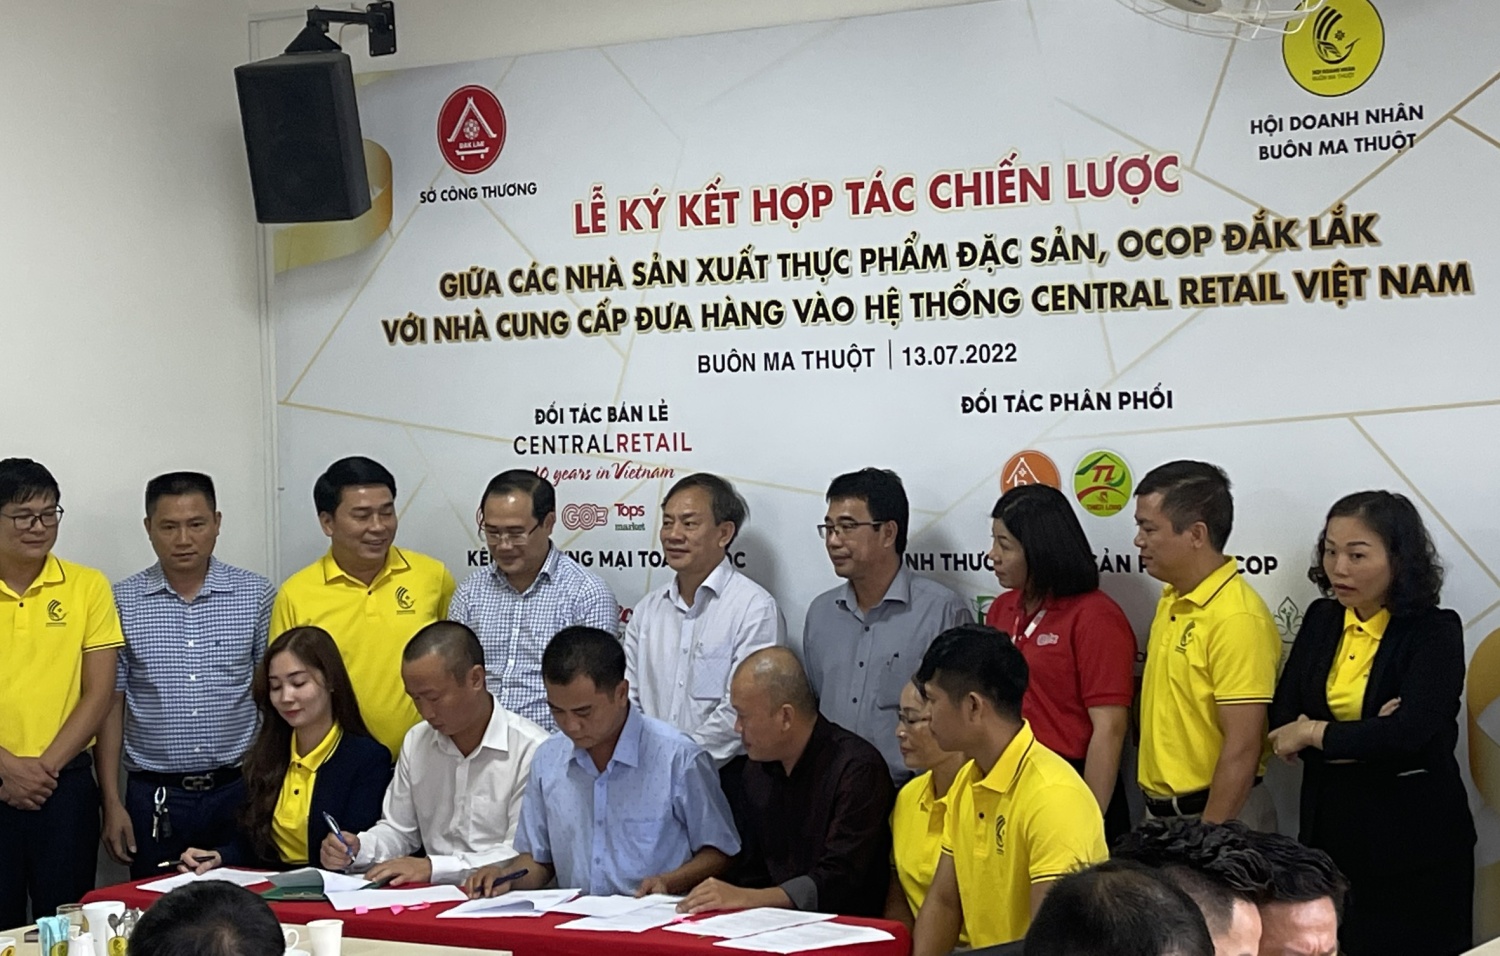 Lễ ký kết hợp tác chiến lược giữa các nhà sản xuất thực phẩm đặc sản, OCOP của Đắk Lắk với nhà phân phối đưa hàng vào hệ thống siêu thị của tập đoàn Central Retail